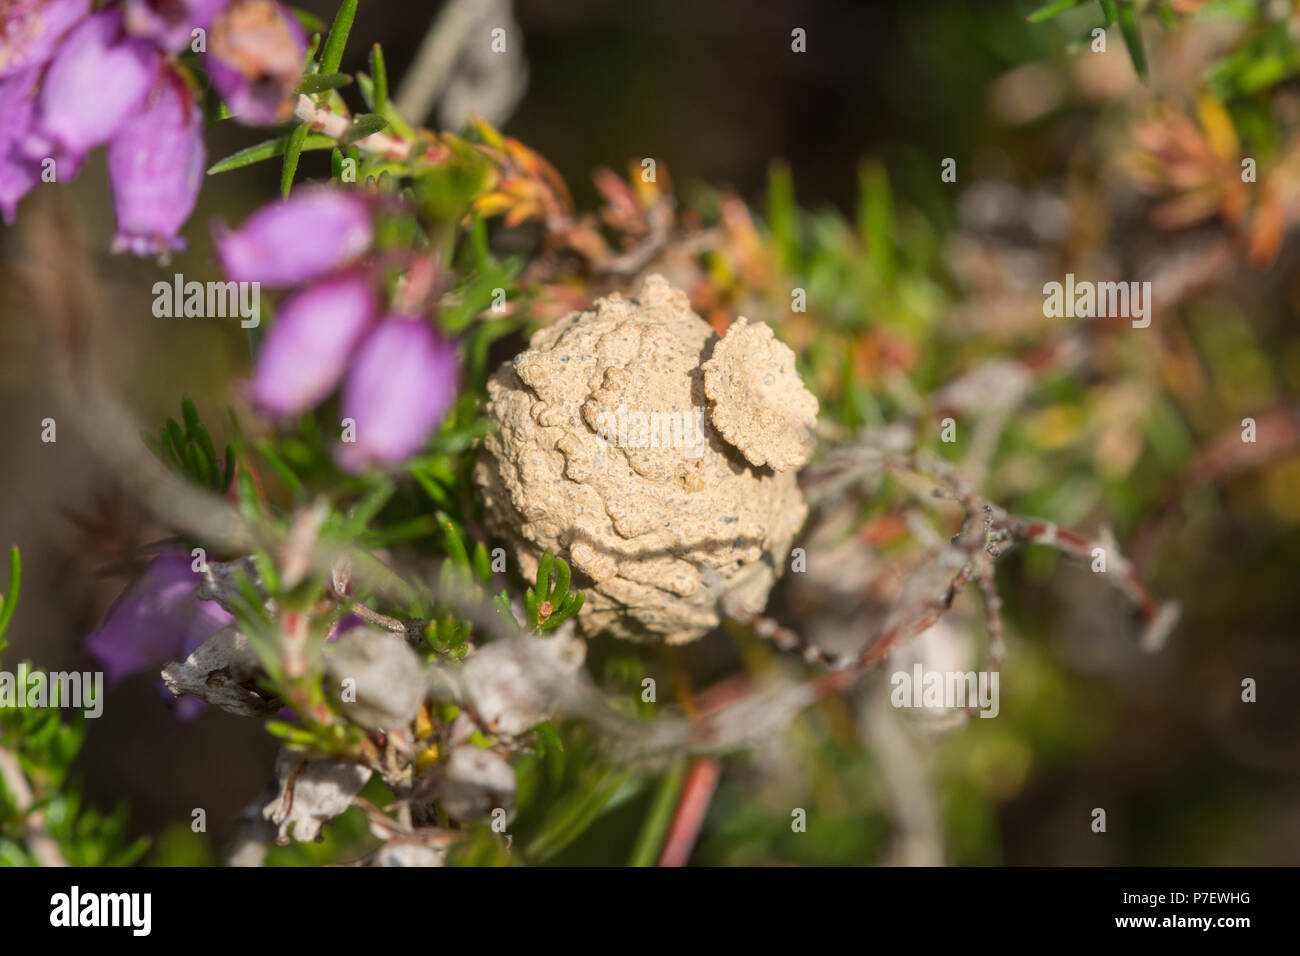 Nido o pentola di rari solitaria potter heath wasp (Eumenes coarctatus) in heather sulla brughiera nel Surrey, Regno Unito Foto Stock